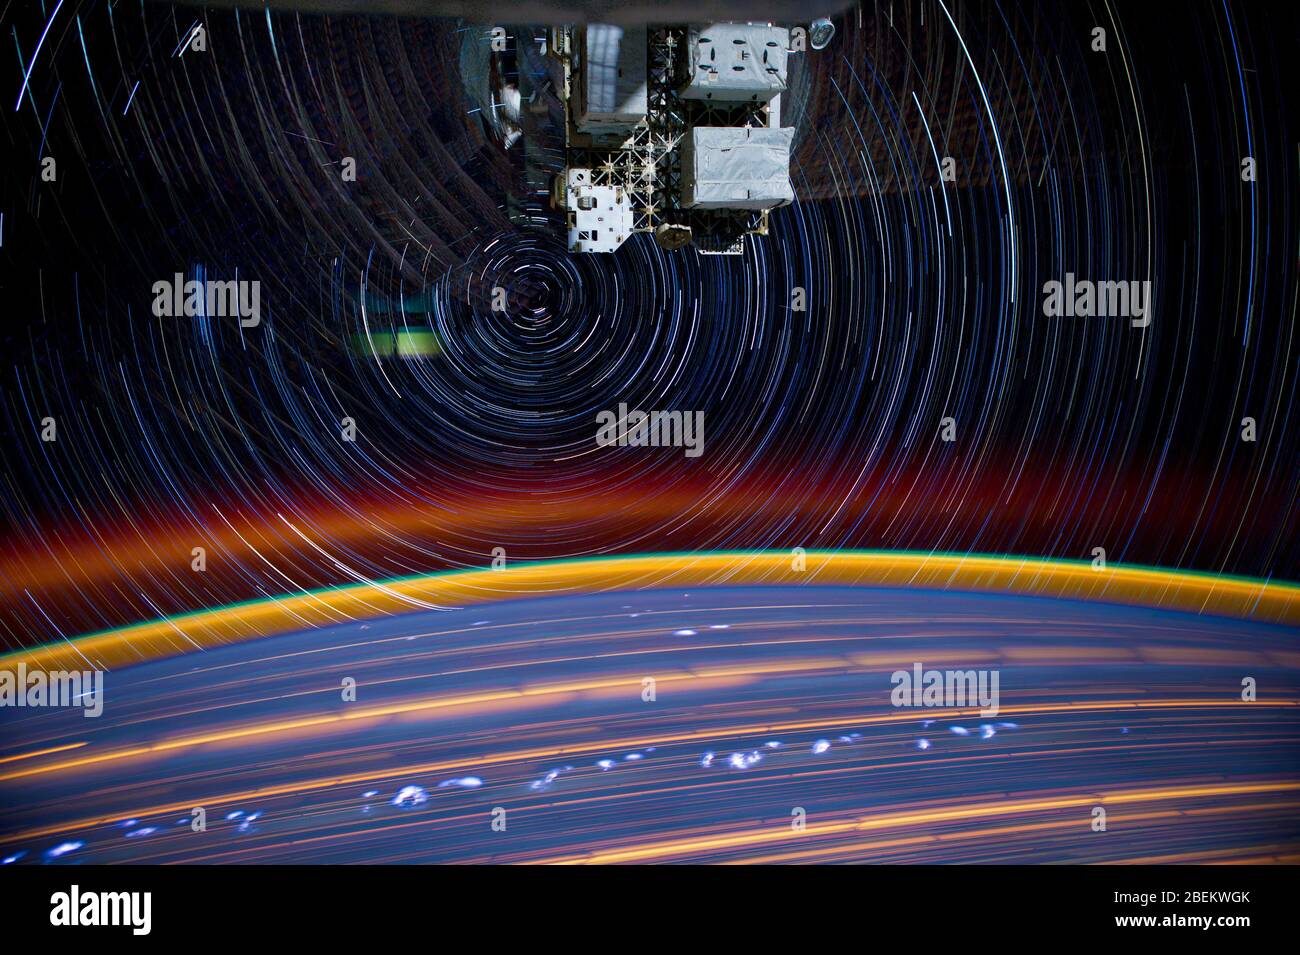 ISS - 16 mars 2012 - il s'agit d'un composite d'une série d'images photographiées à partir d'une caméra montée sur la Station spatiale internationale en orbite terrestre, Banque D'Images